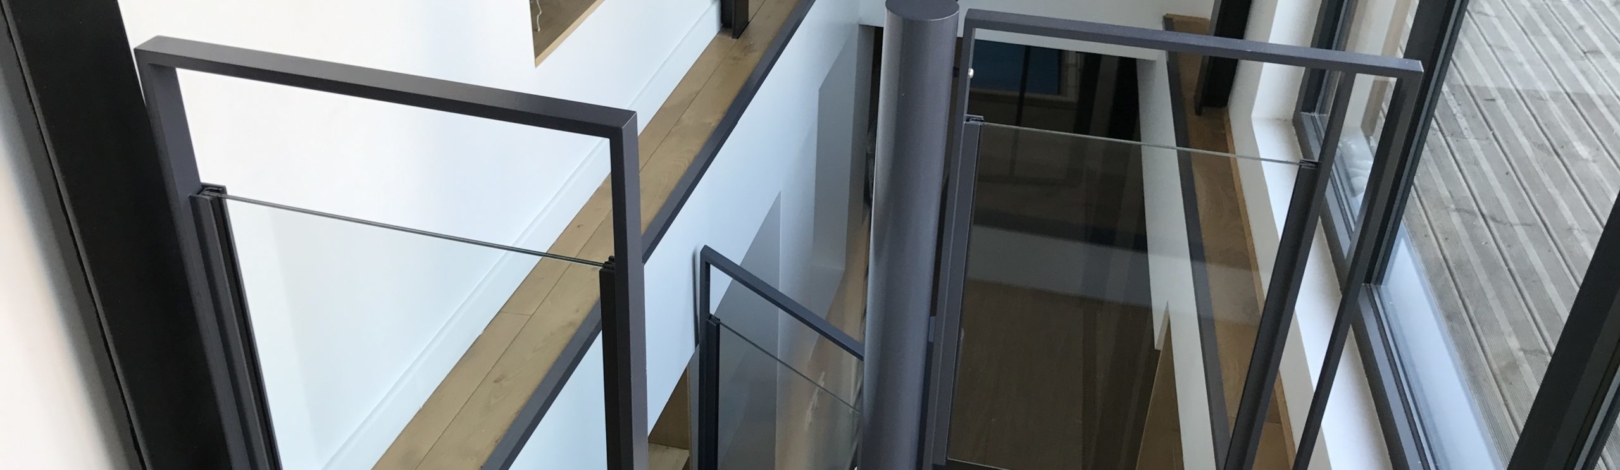 escalier helicoidal en acier verre et bois